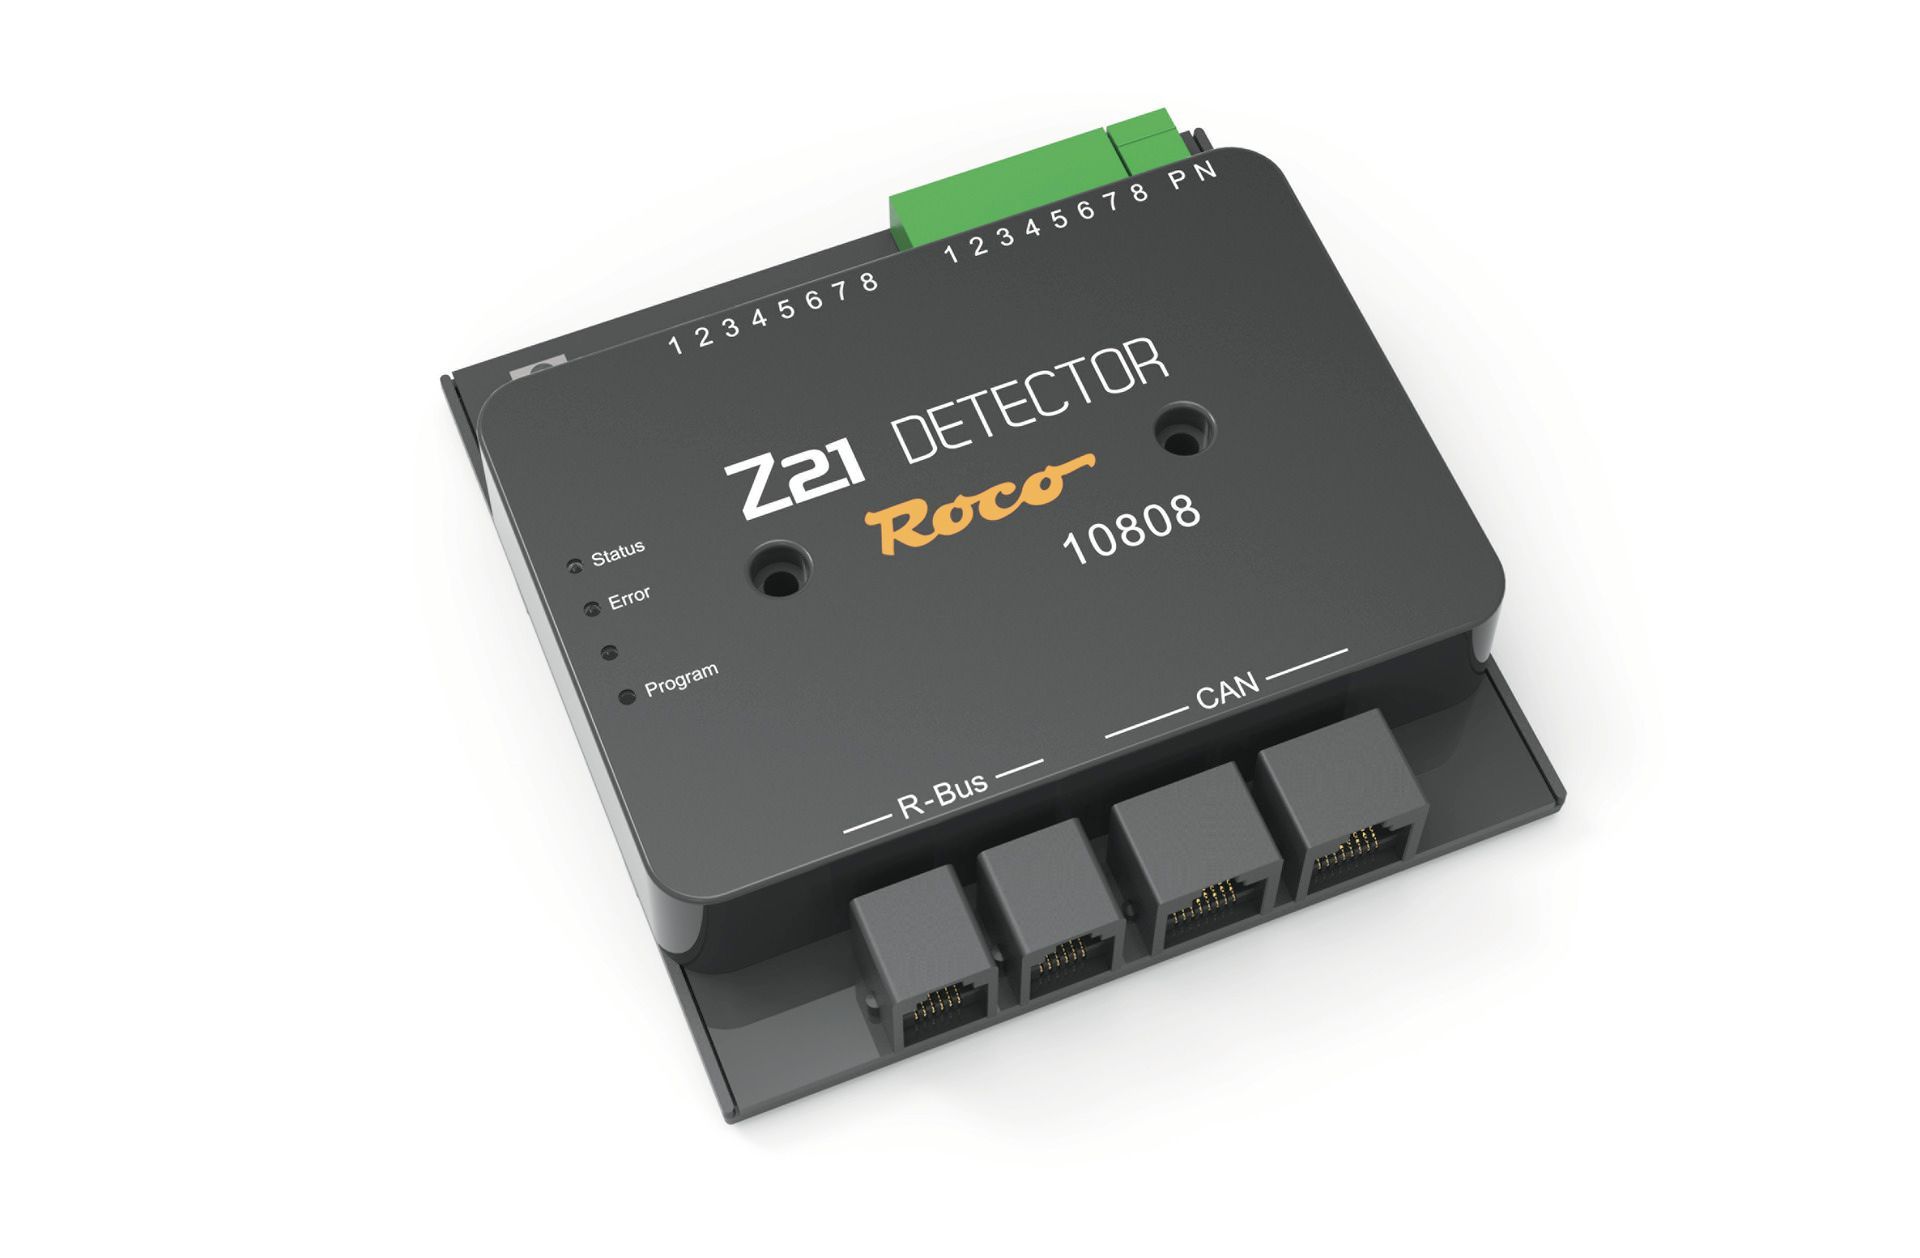 Roco 10808 - Z21 Detektor